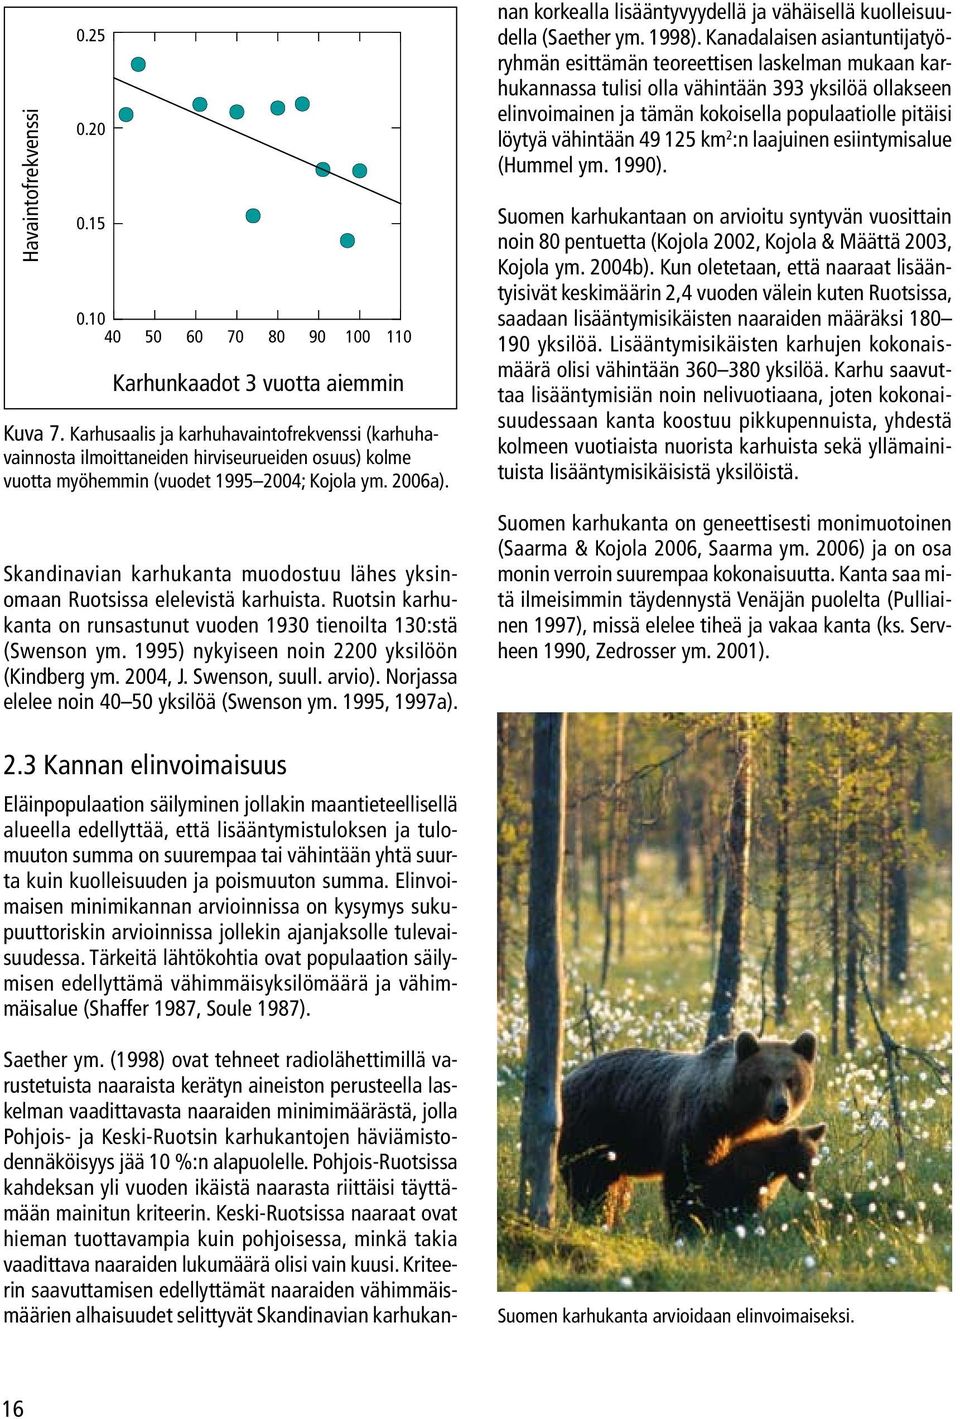 Skandinavian karhukanta muodostuu lähes yksinomaan Ruotsissa elelevistä karhuista. Ruotsin karhukanta on runsastunut vuoden 1930 tienoilta 130:stä (Swenson ym.